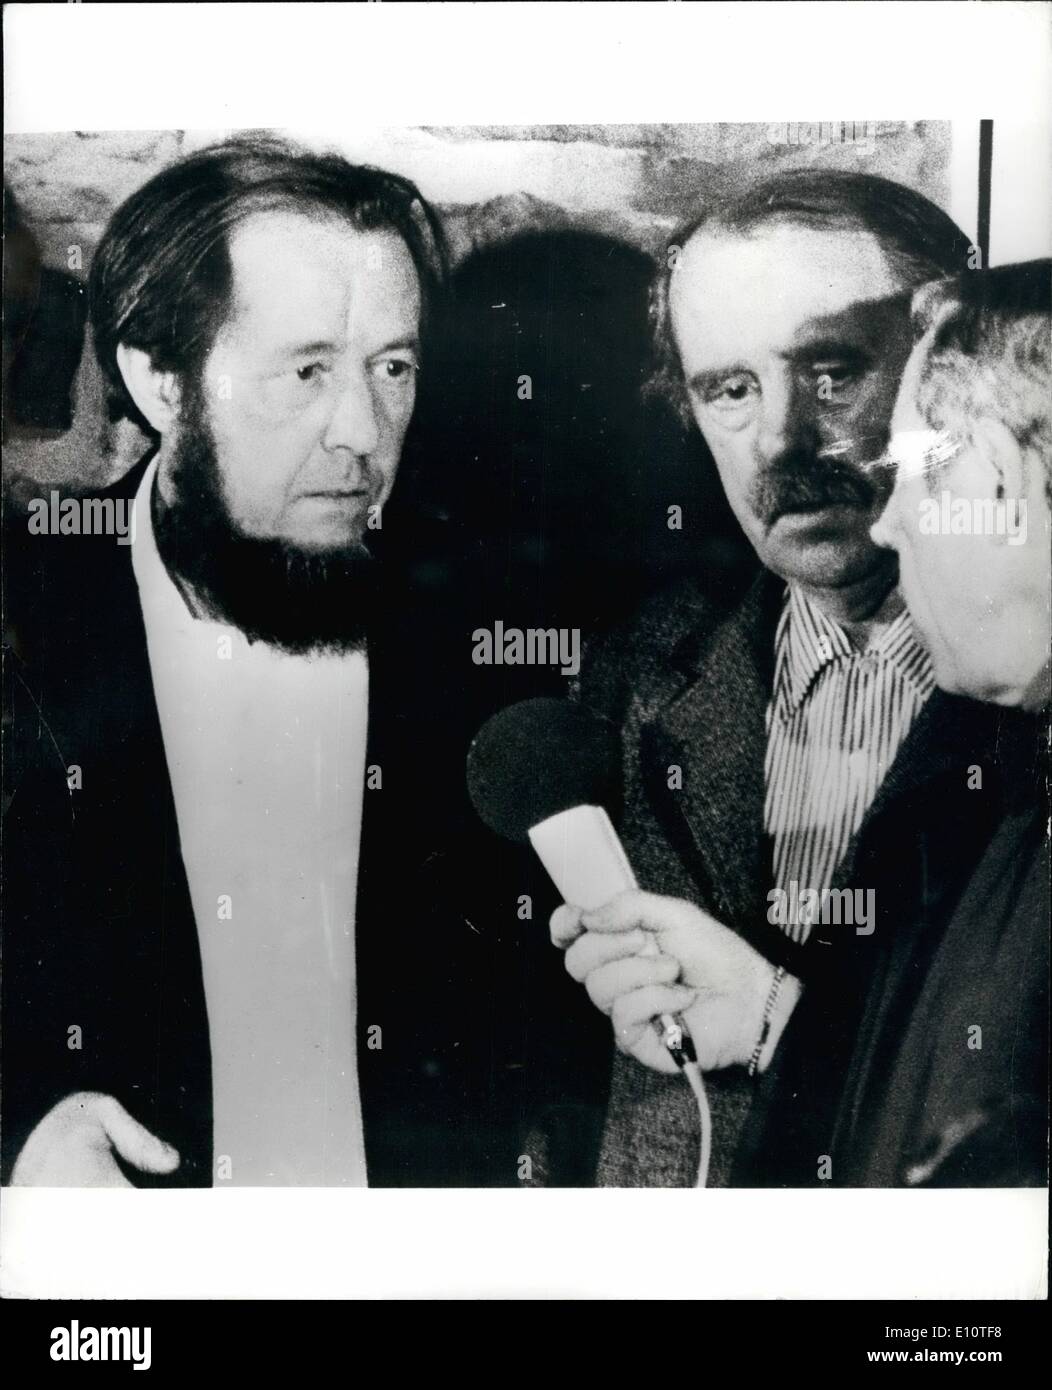 Febbraio 02, 1974 - autore russo esiliato. Alexander Solzhenitsyn, gli espulsi autore russo, era volato a Francoforte ieri e quindi azionati per il fine settimana a casa di Heinrich Boll, West autore tedesco, a Langenbroich, a ovest di Bonn. La foto mostra il barbuto Alexander Solzhenitsyn nella foto con il suo ospite, Heinrich Boll, a Langenbroich, ieri Foto Stock